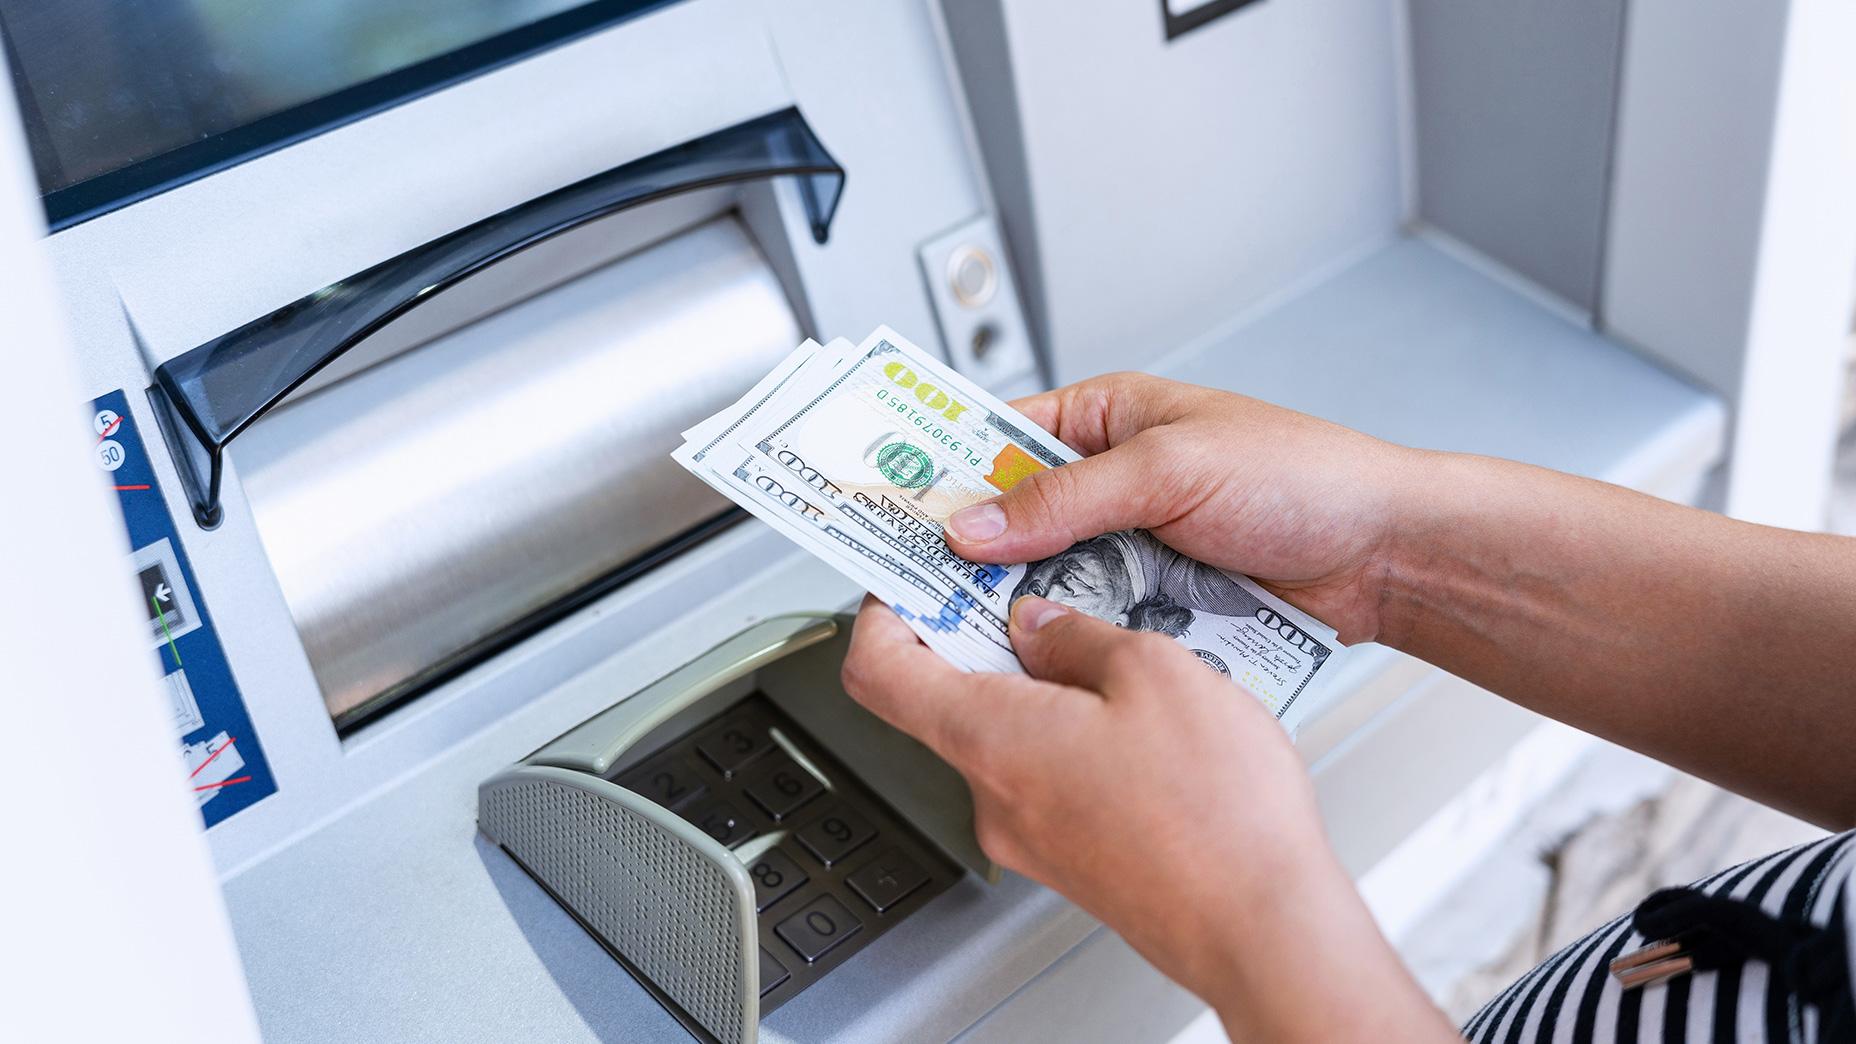 วิกฤตการณ์ในภาคการเงินส่งผลกระทบต่อผลกำไรของธนาคารสหรัฐอย่างไร